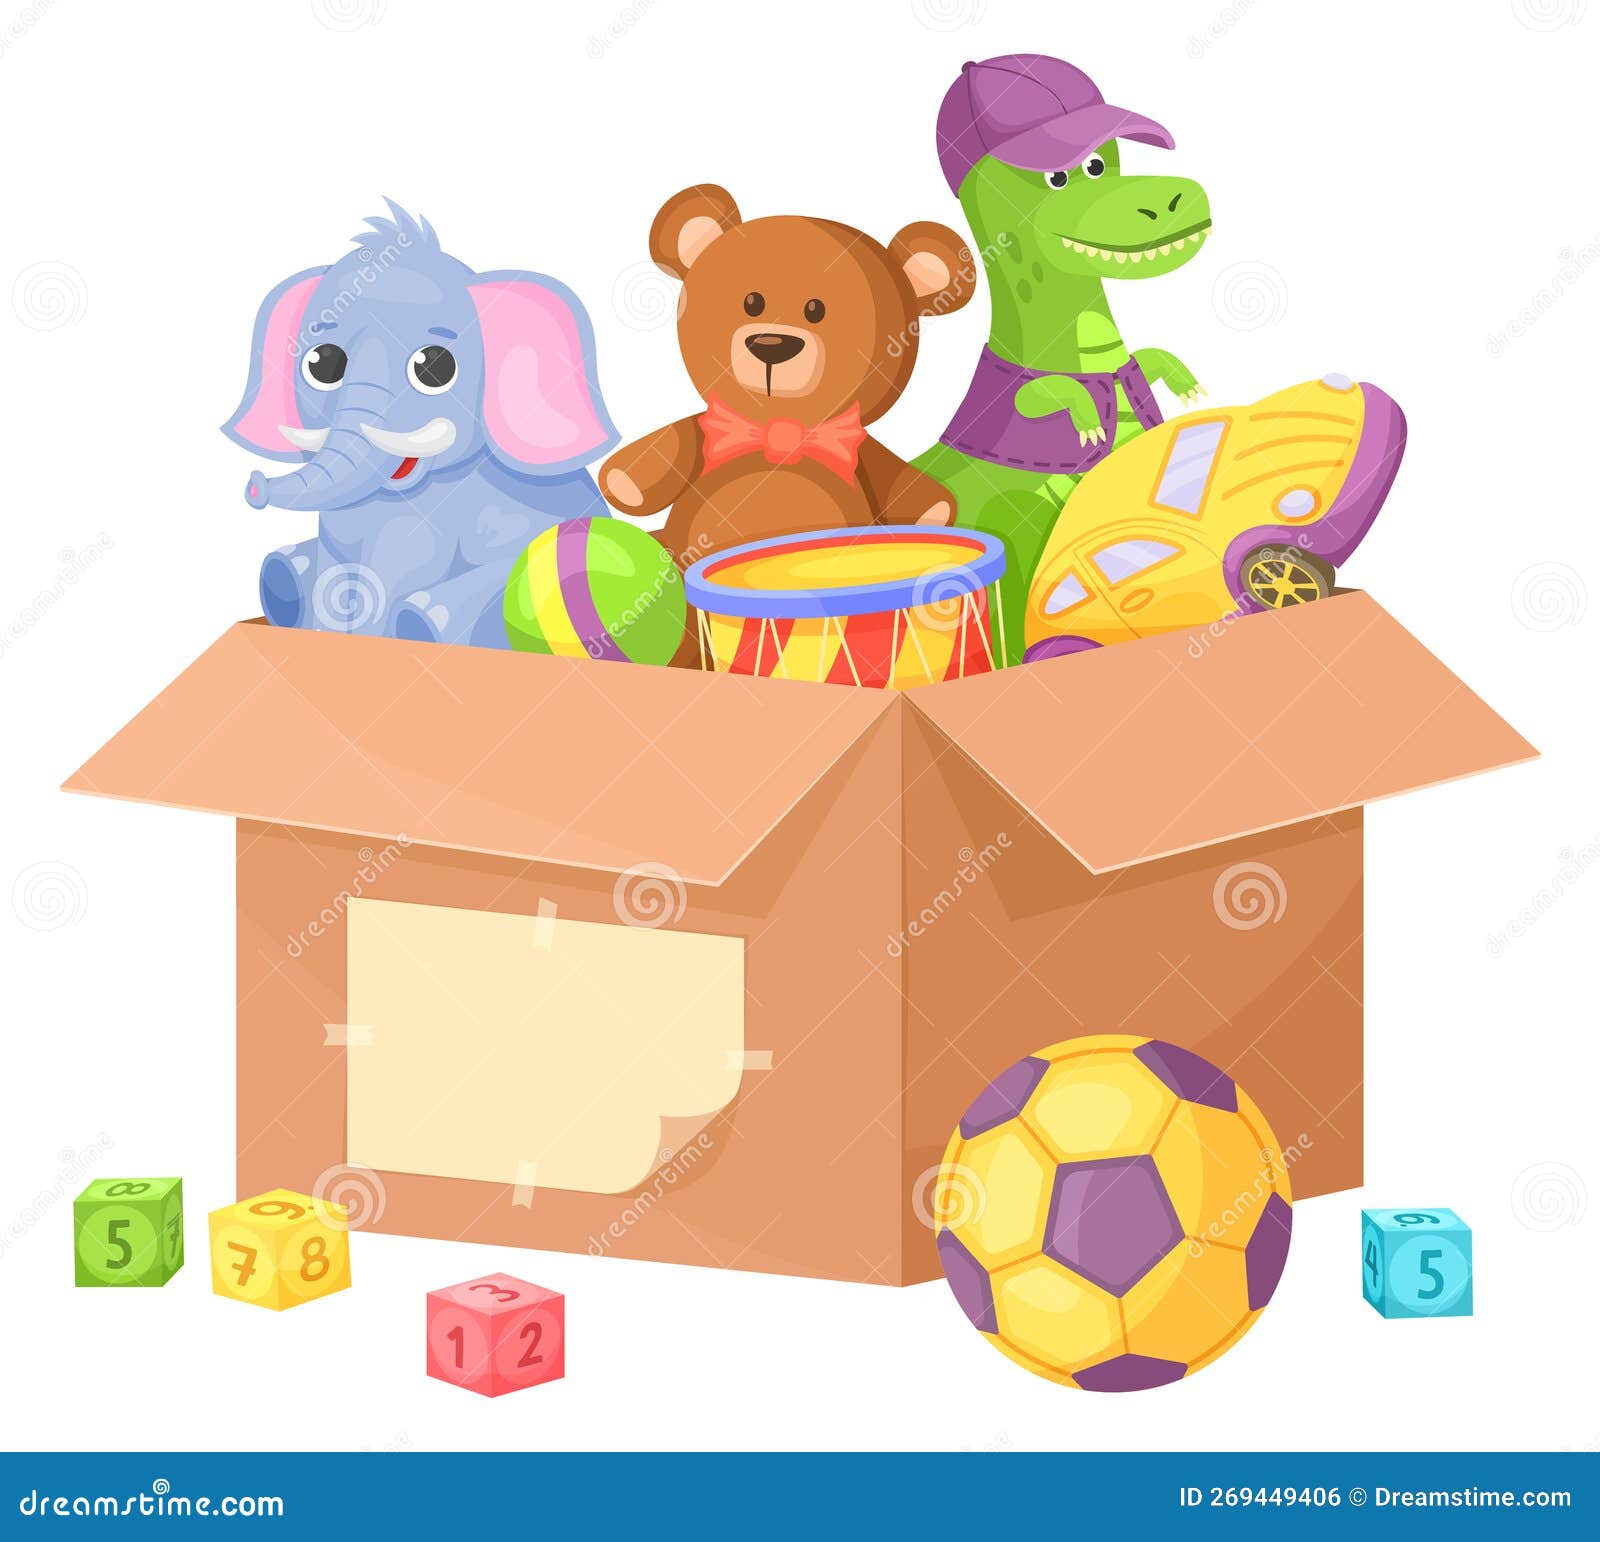 https://thumbs.dreamstime.com/z/icono-de-caricatura-caja-juguetes-contenedor-equipos-juego-infantil-aislado-en-fondo-blanco-269449406.jpg